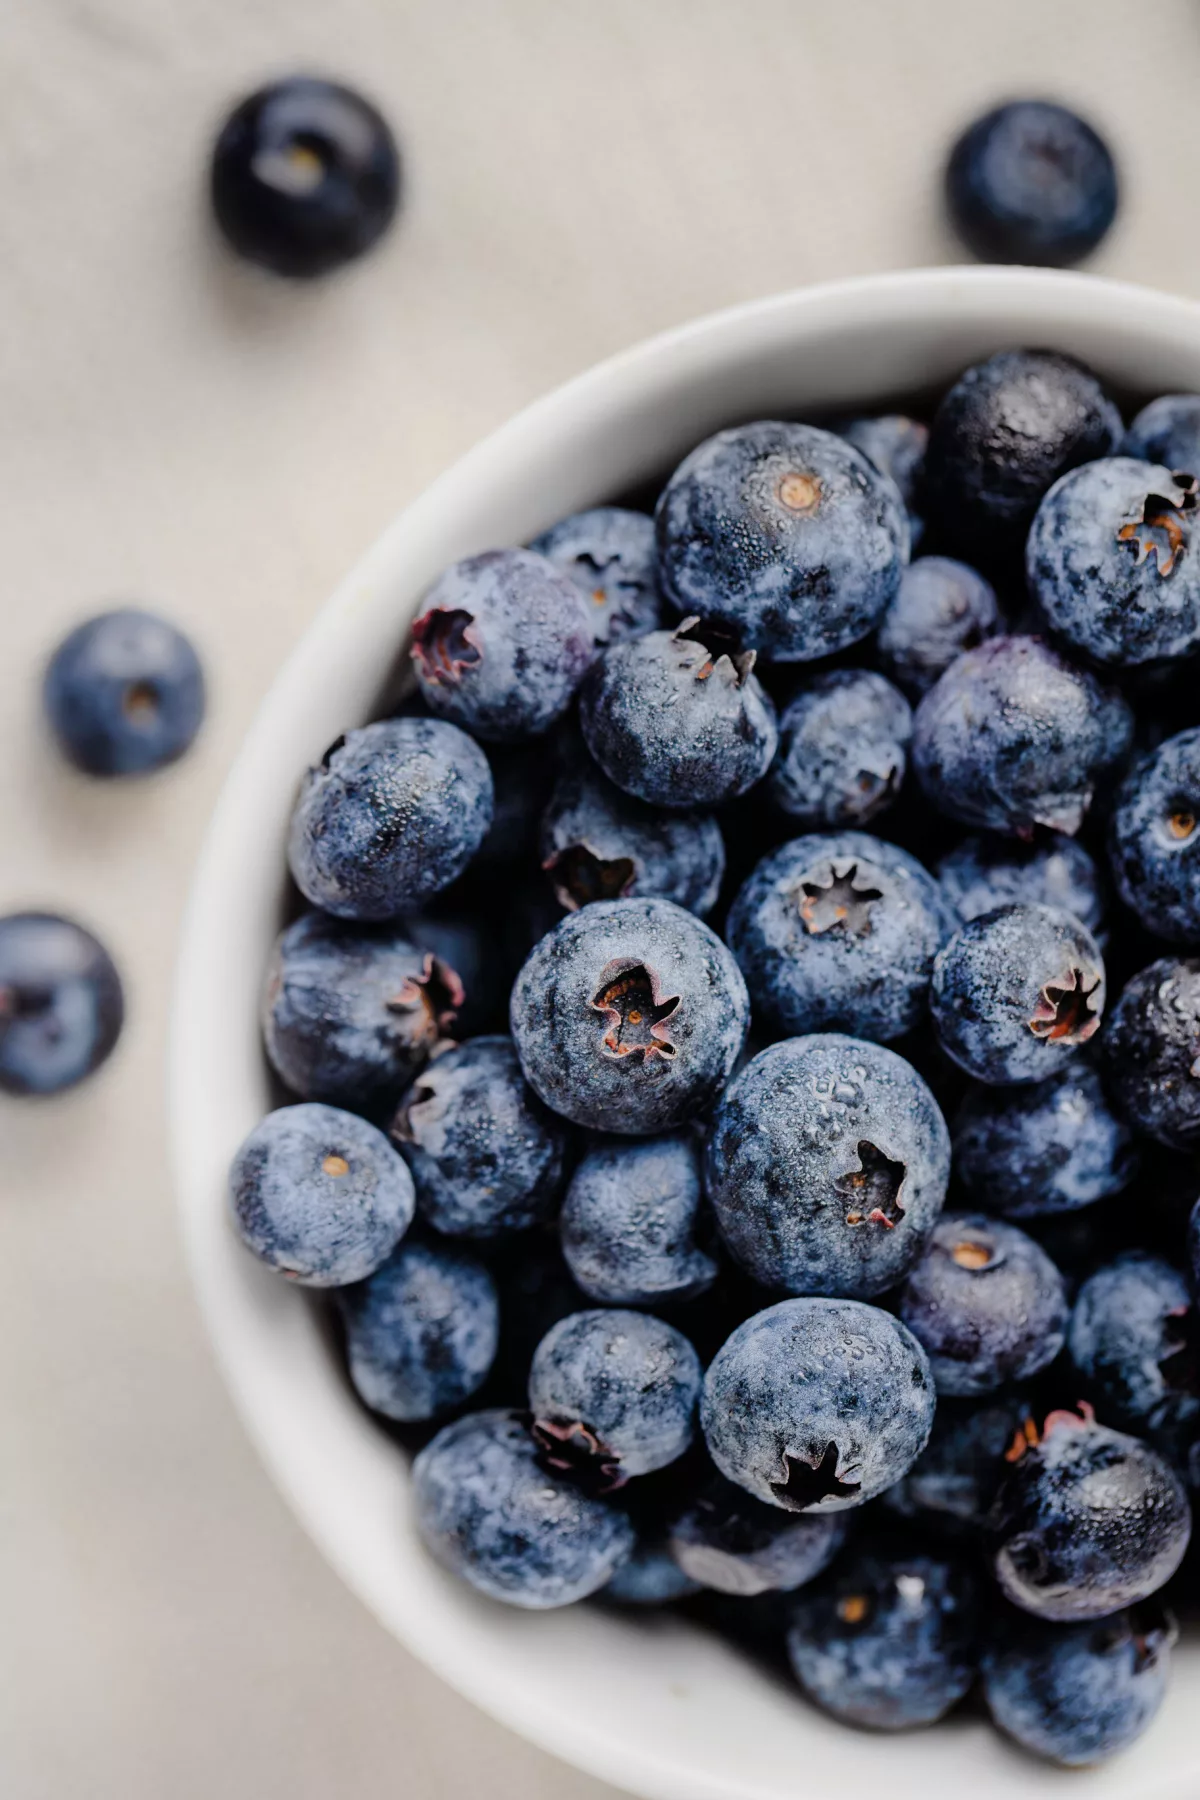 a bowl full of ripe blueberries